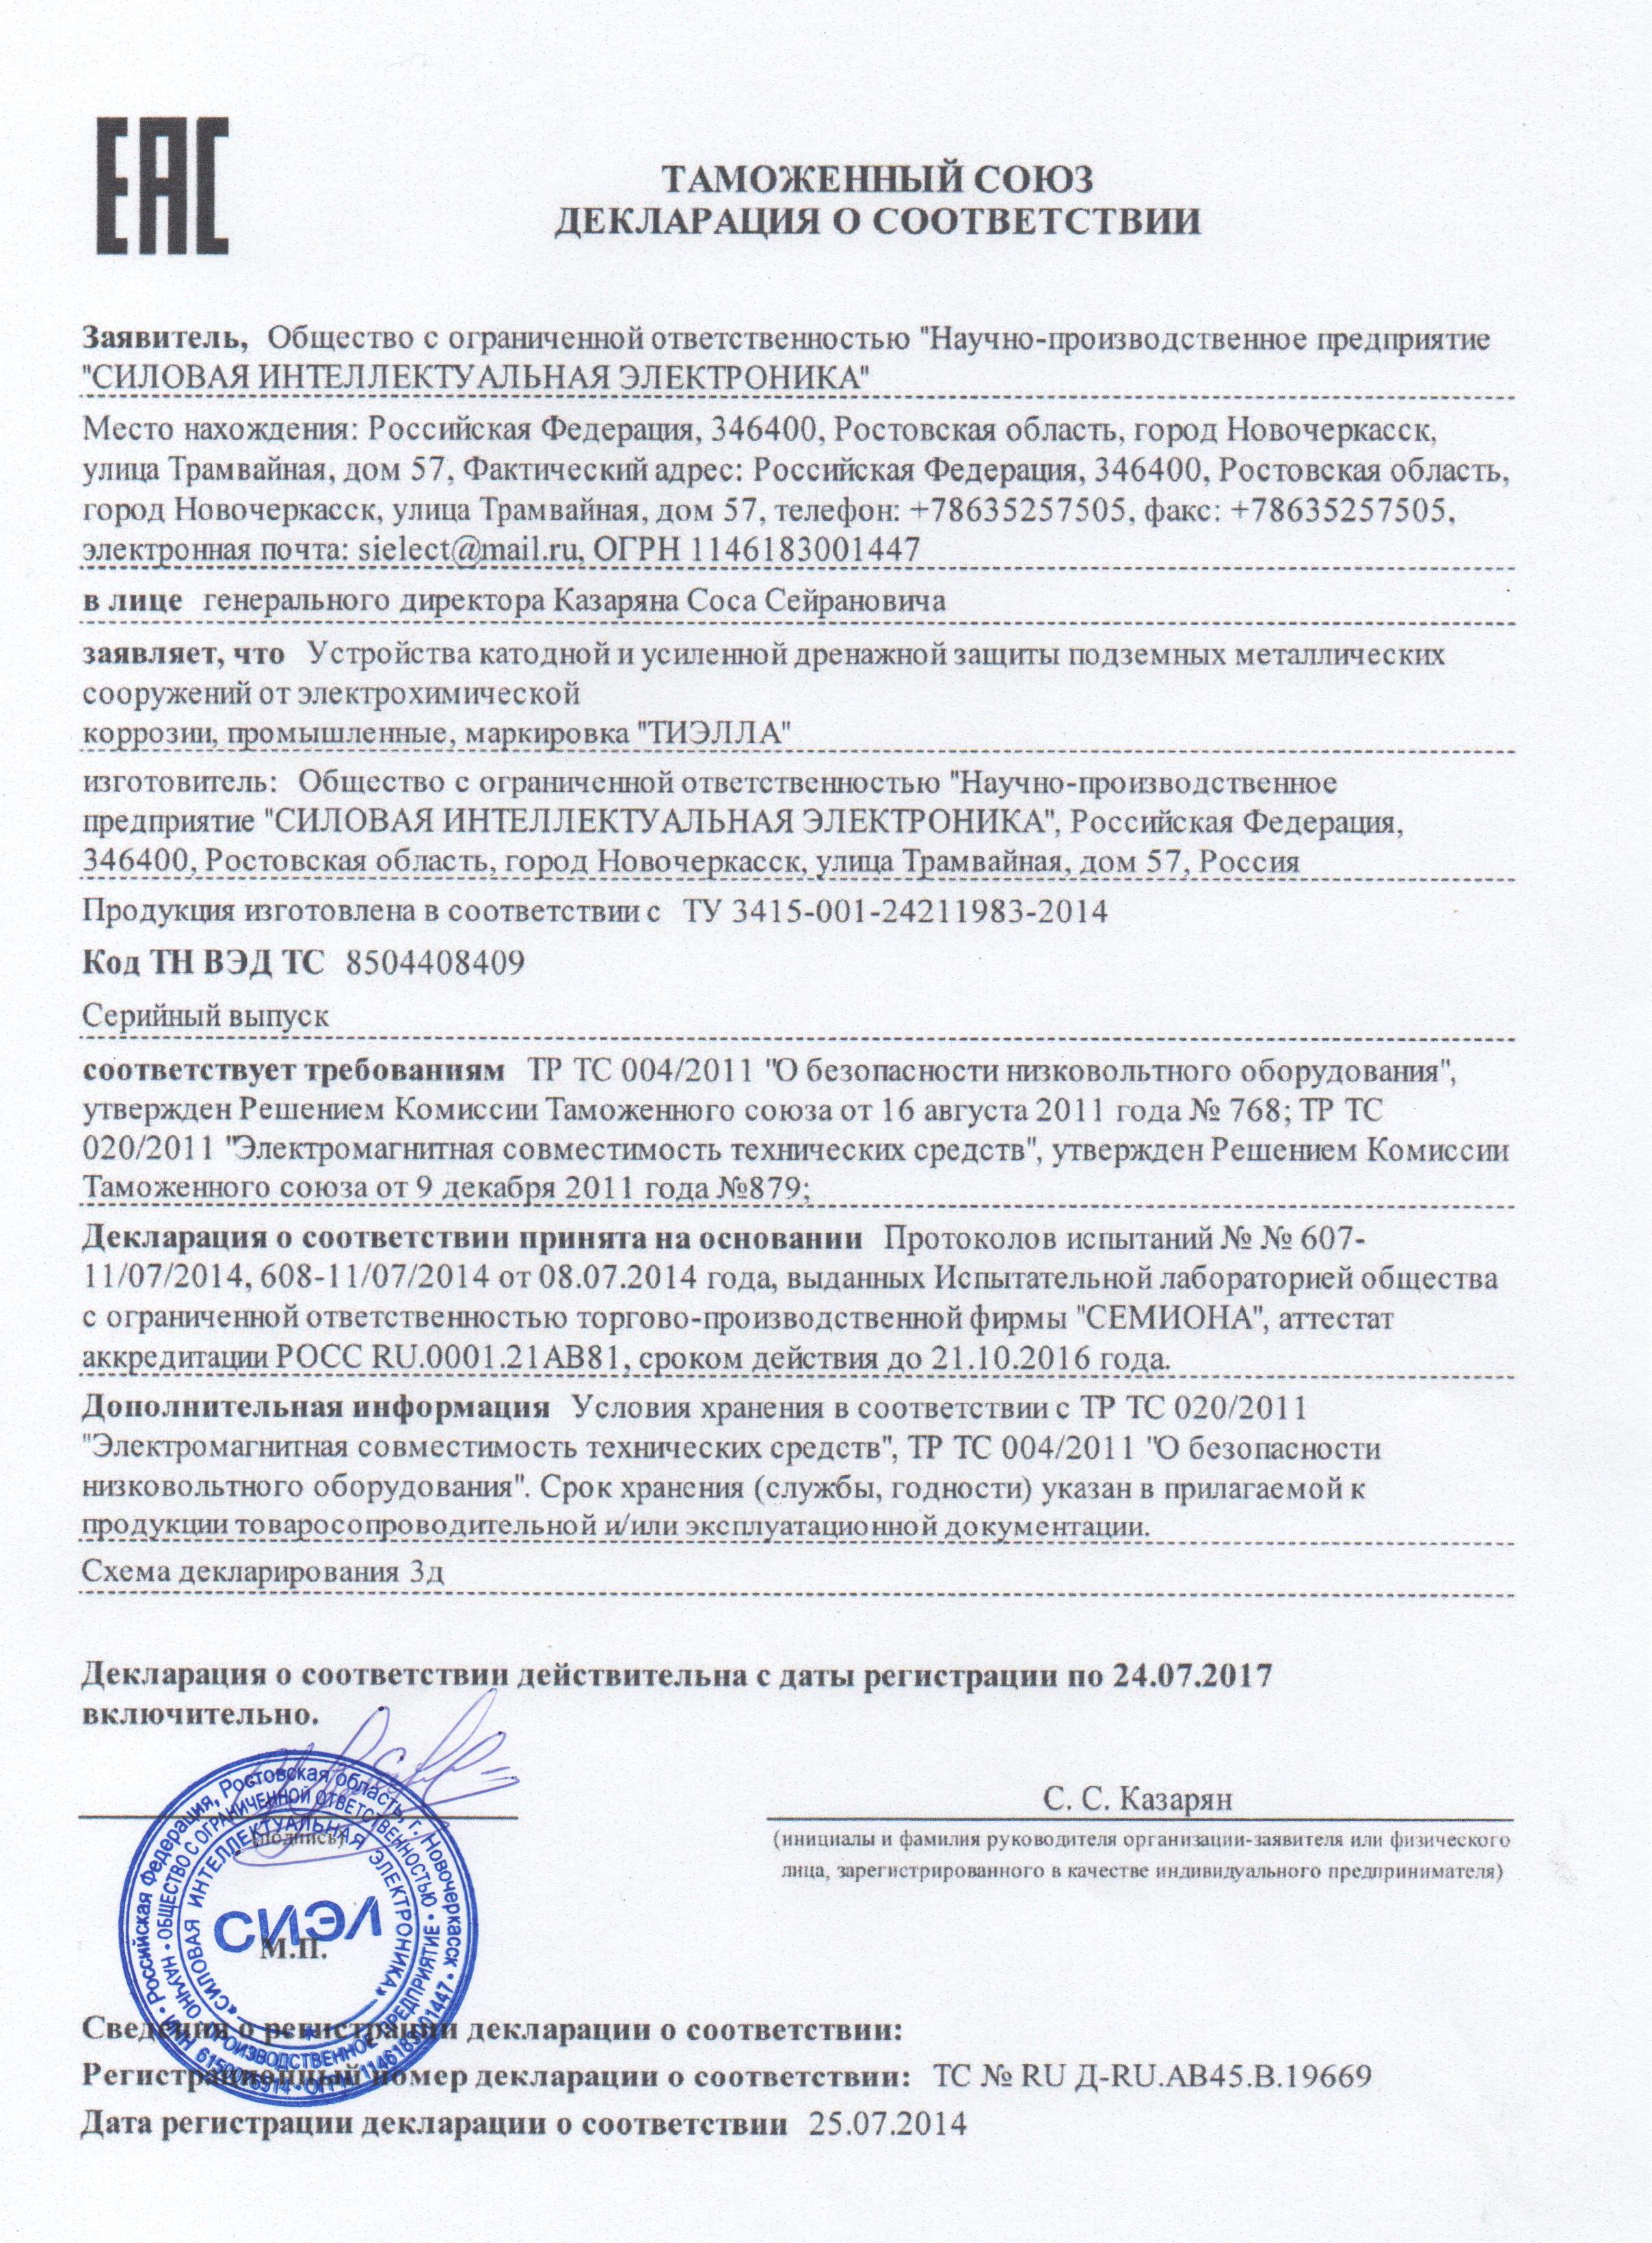 Декларация соответствия  таможенного союза на станции катодной и усиленной дренажной защиты типа "ТИЭЛЛА" НПП "СИЭЛ"